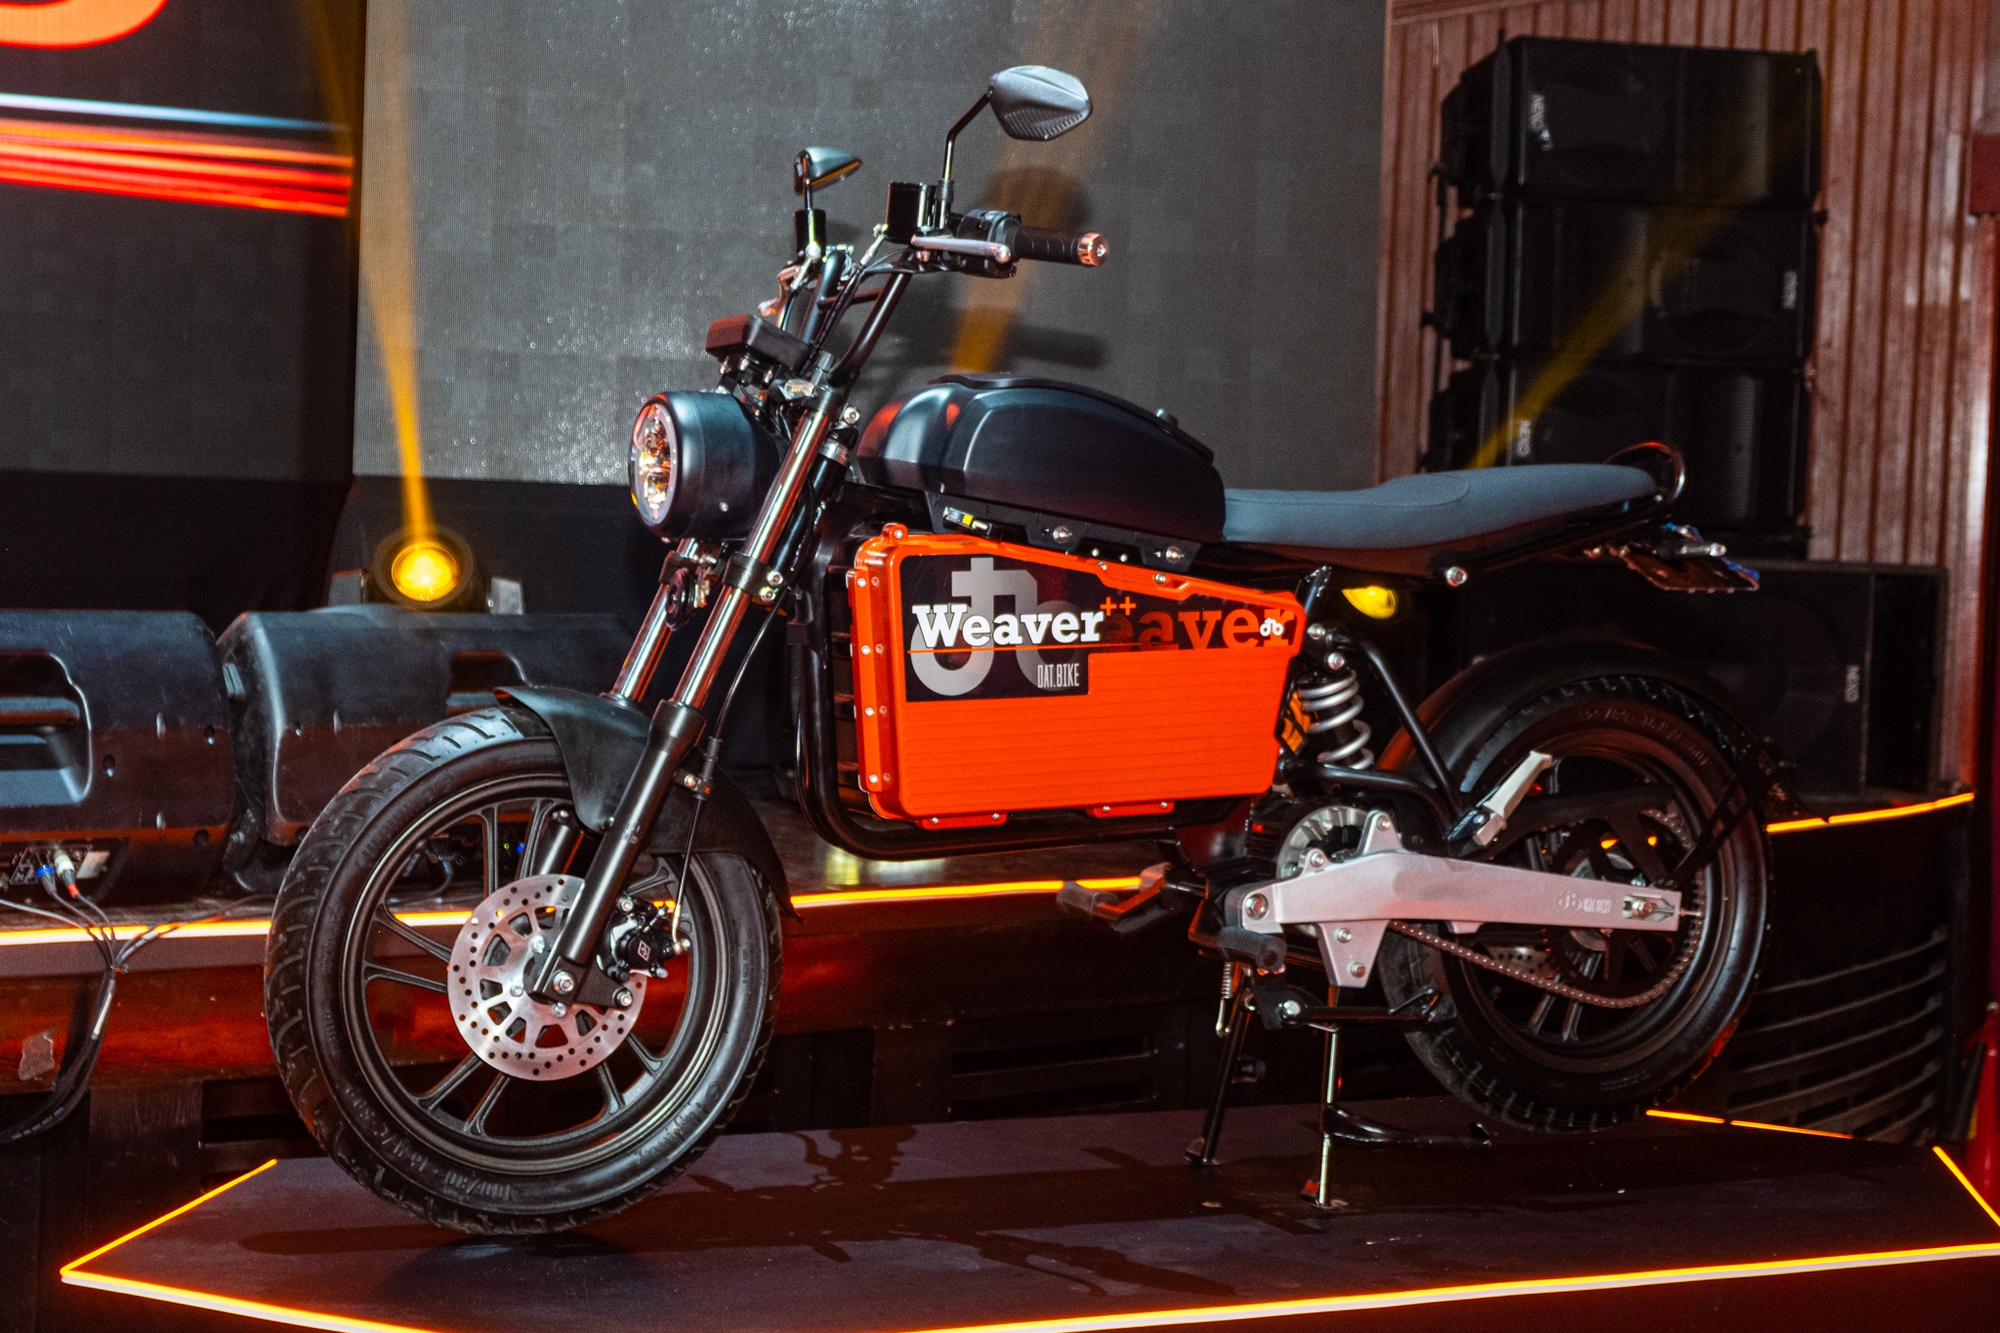 Ra mắt Dat Bike Weaver++: Giá 65,9 triệu đồng, dáng cổ điển, sạc nhanh chưa từng có tại Việt Nam - Ảnh 1.